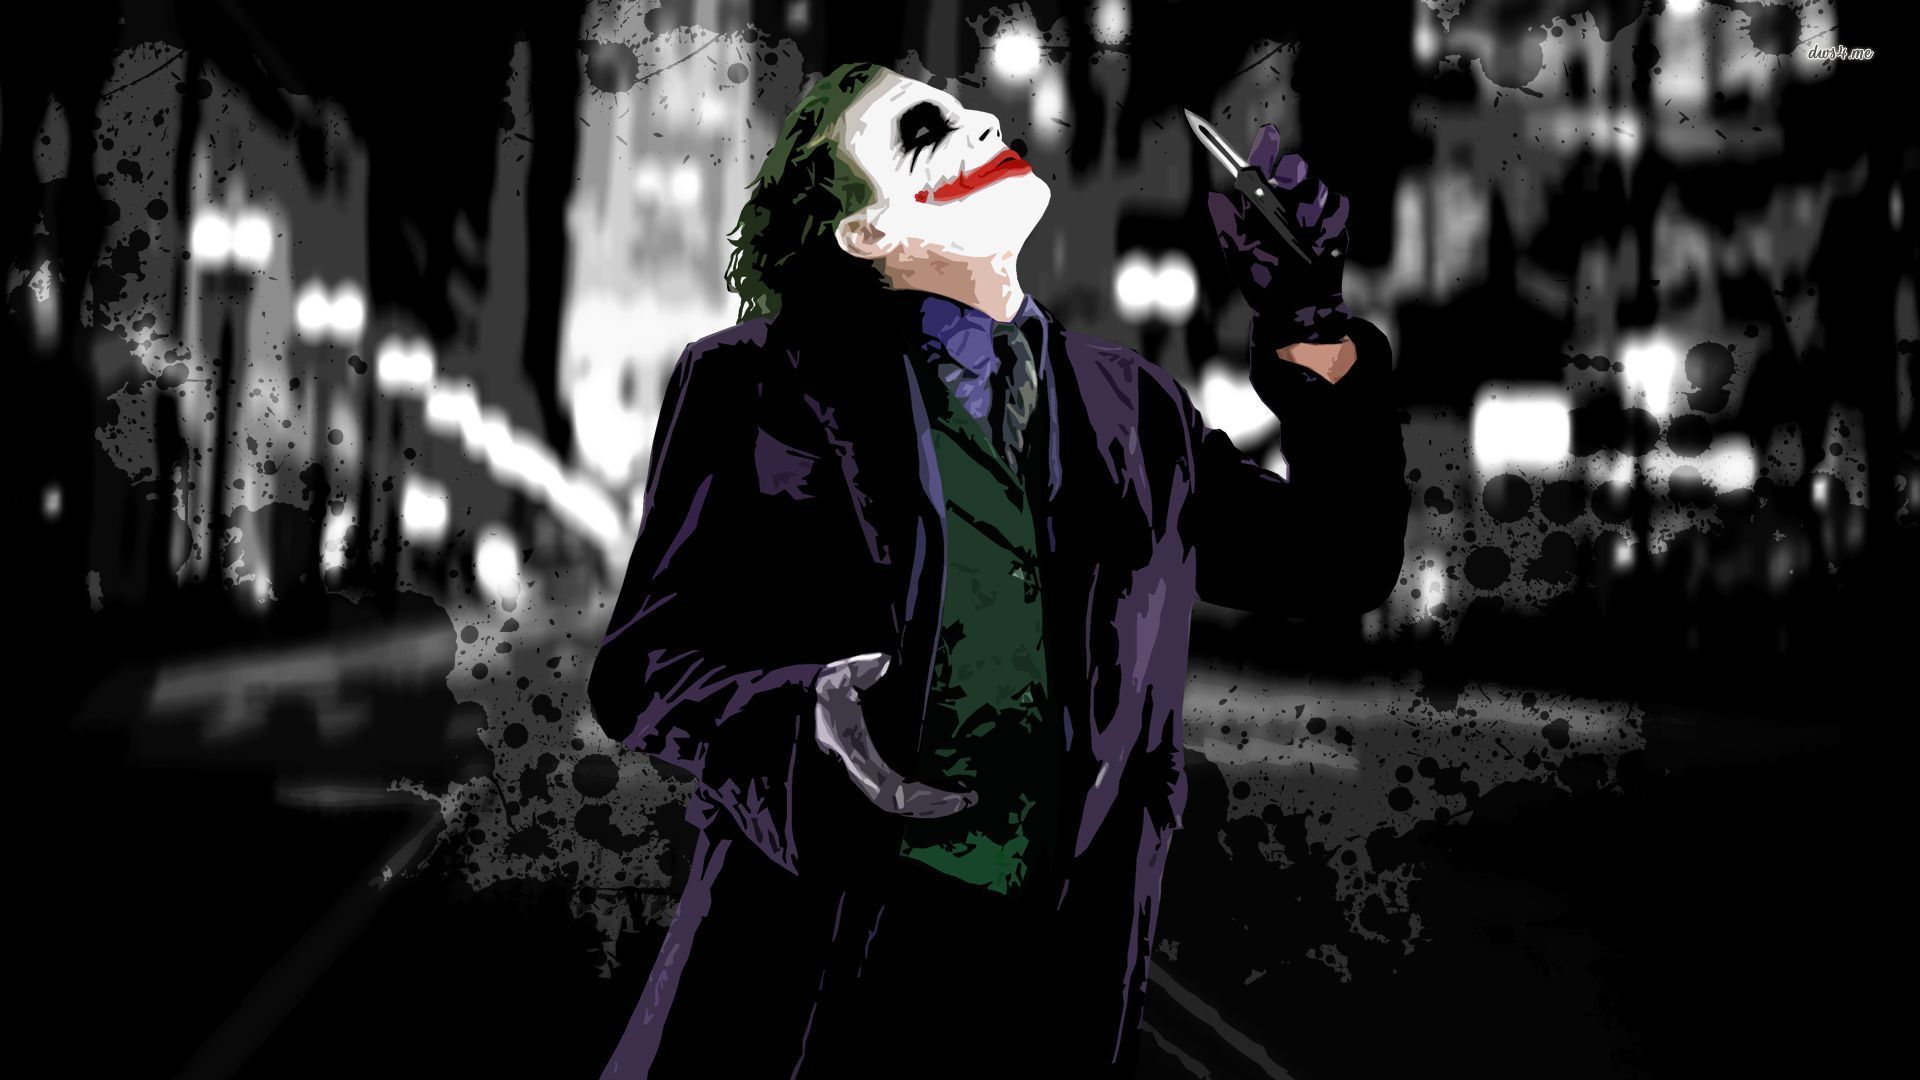 Dark Knight Joker Wallpaper 4k - 1920x1080 Wallpaper 